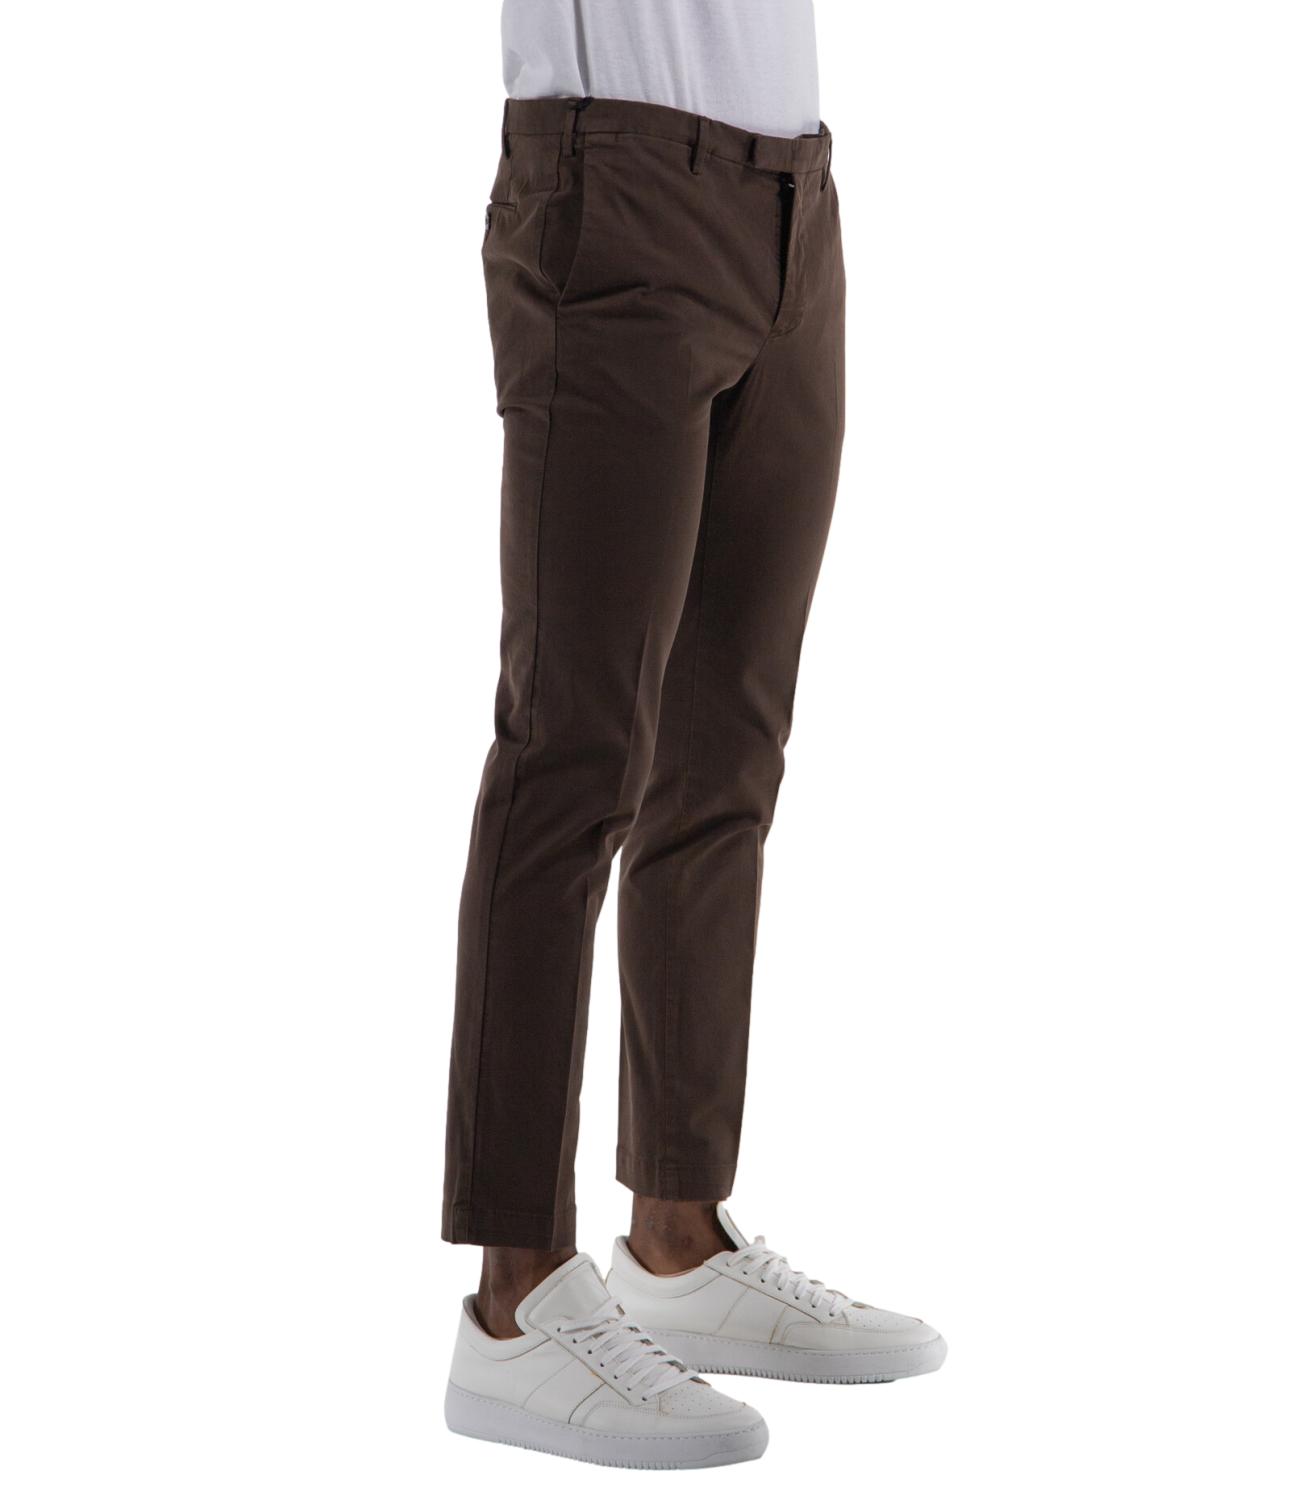 Pantalone PT Torino uomo color marrone scuro L.30